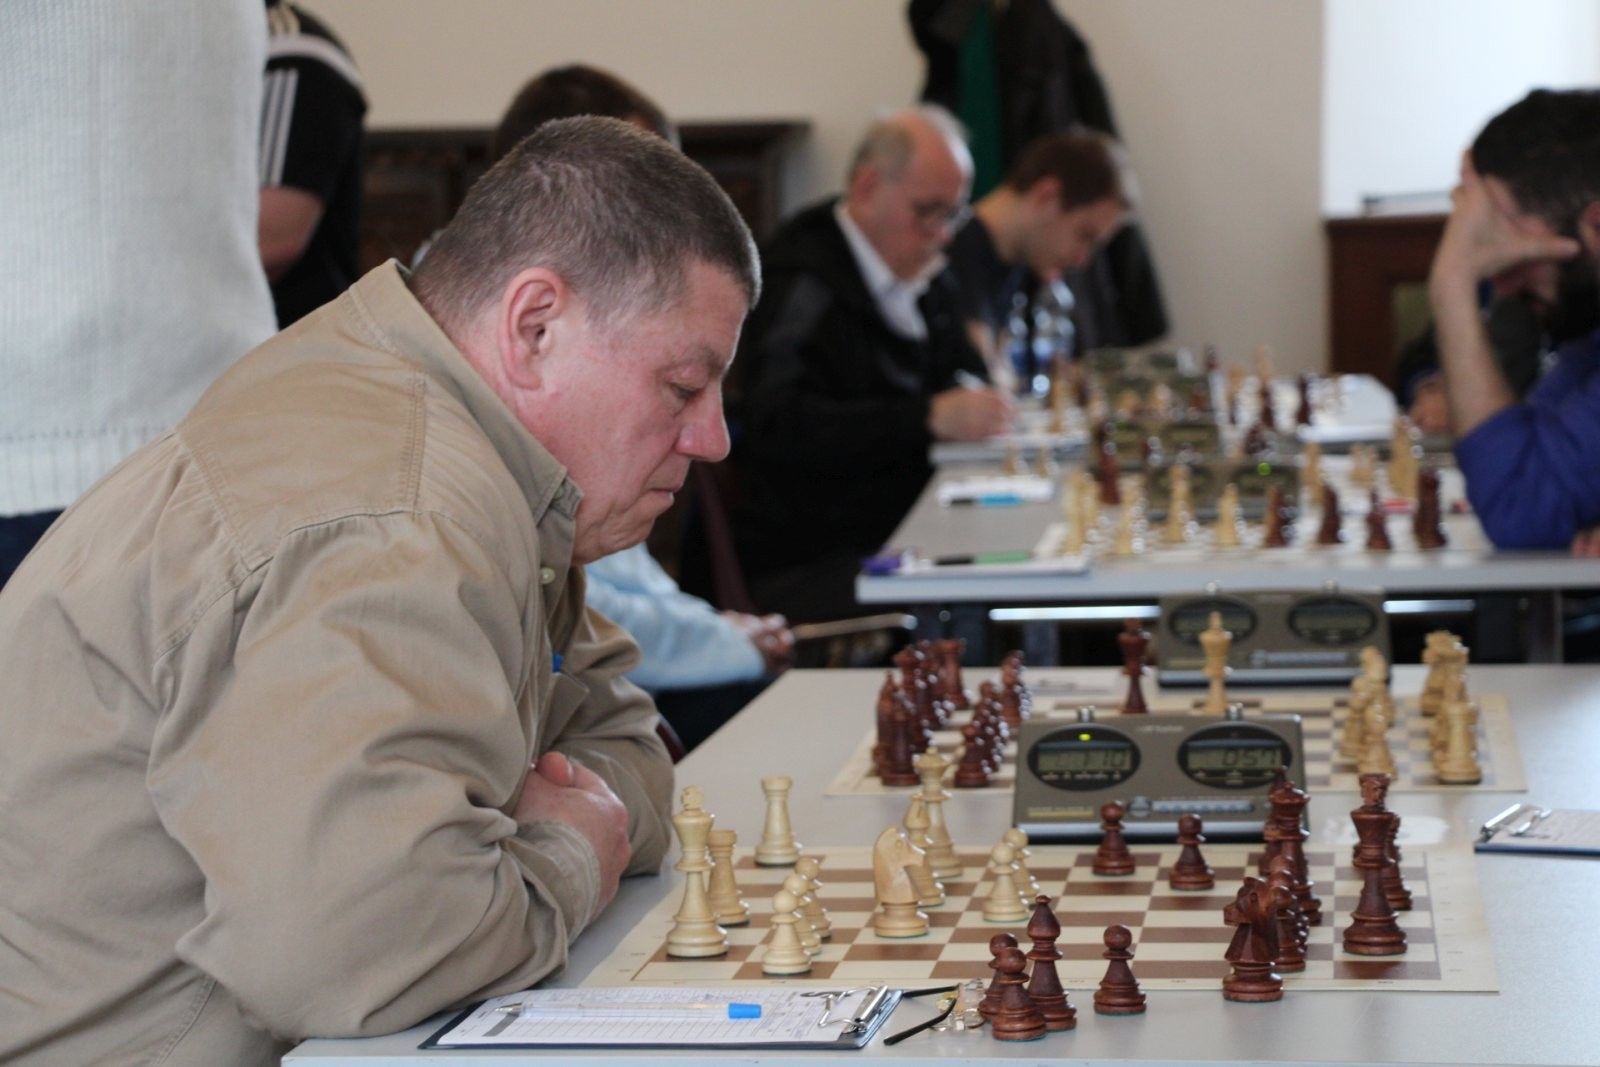 El Torneo de Ajedrez Ajka es el torneo privado de ajedrez más prestigioso del mundo este año